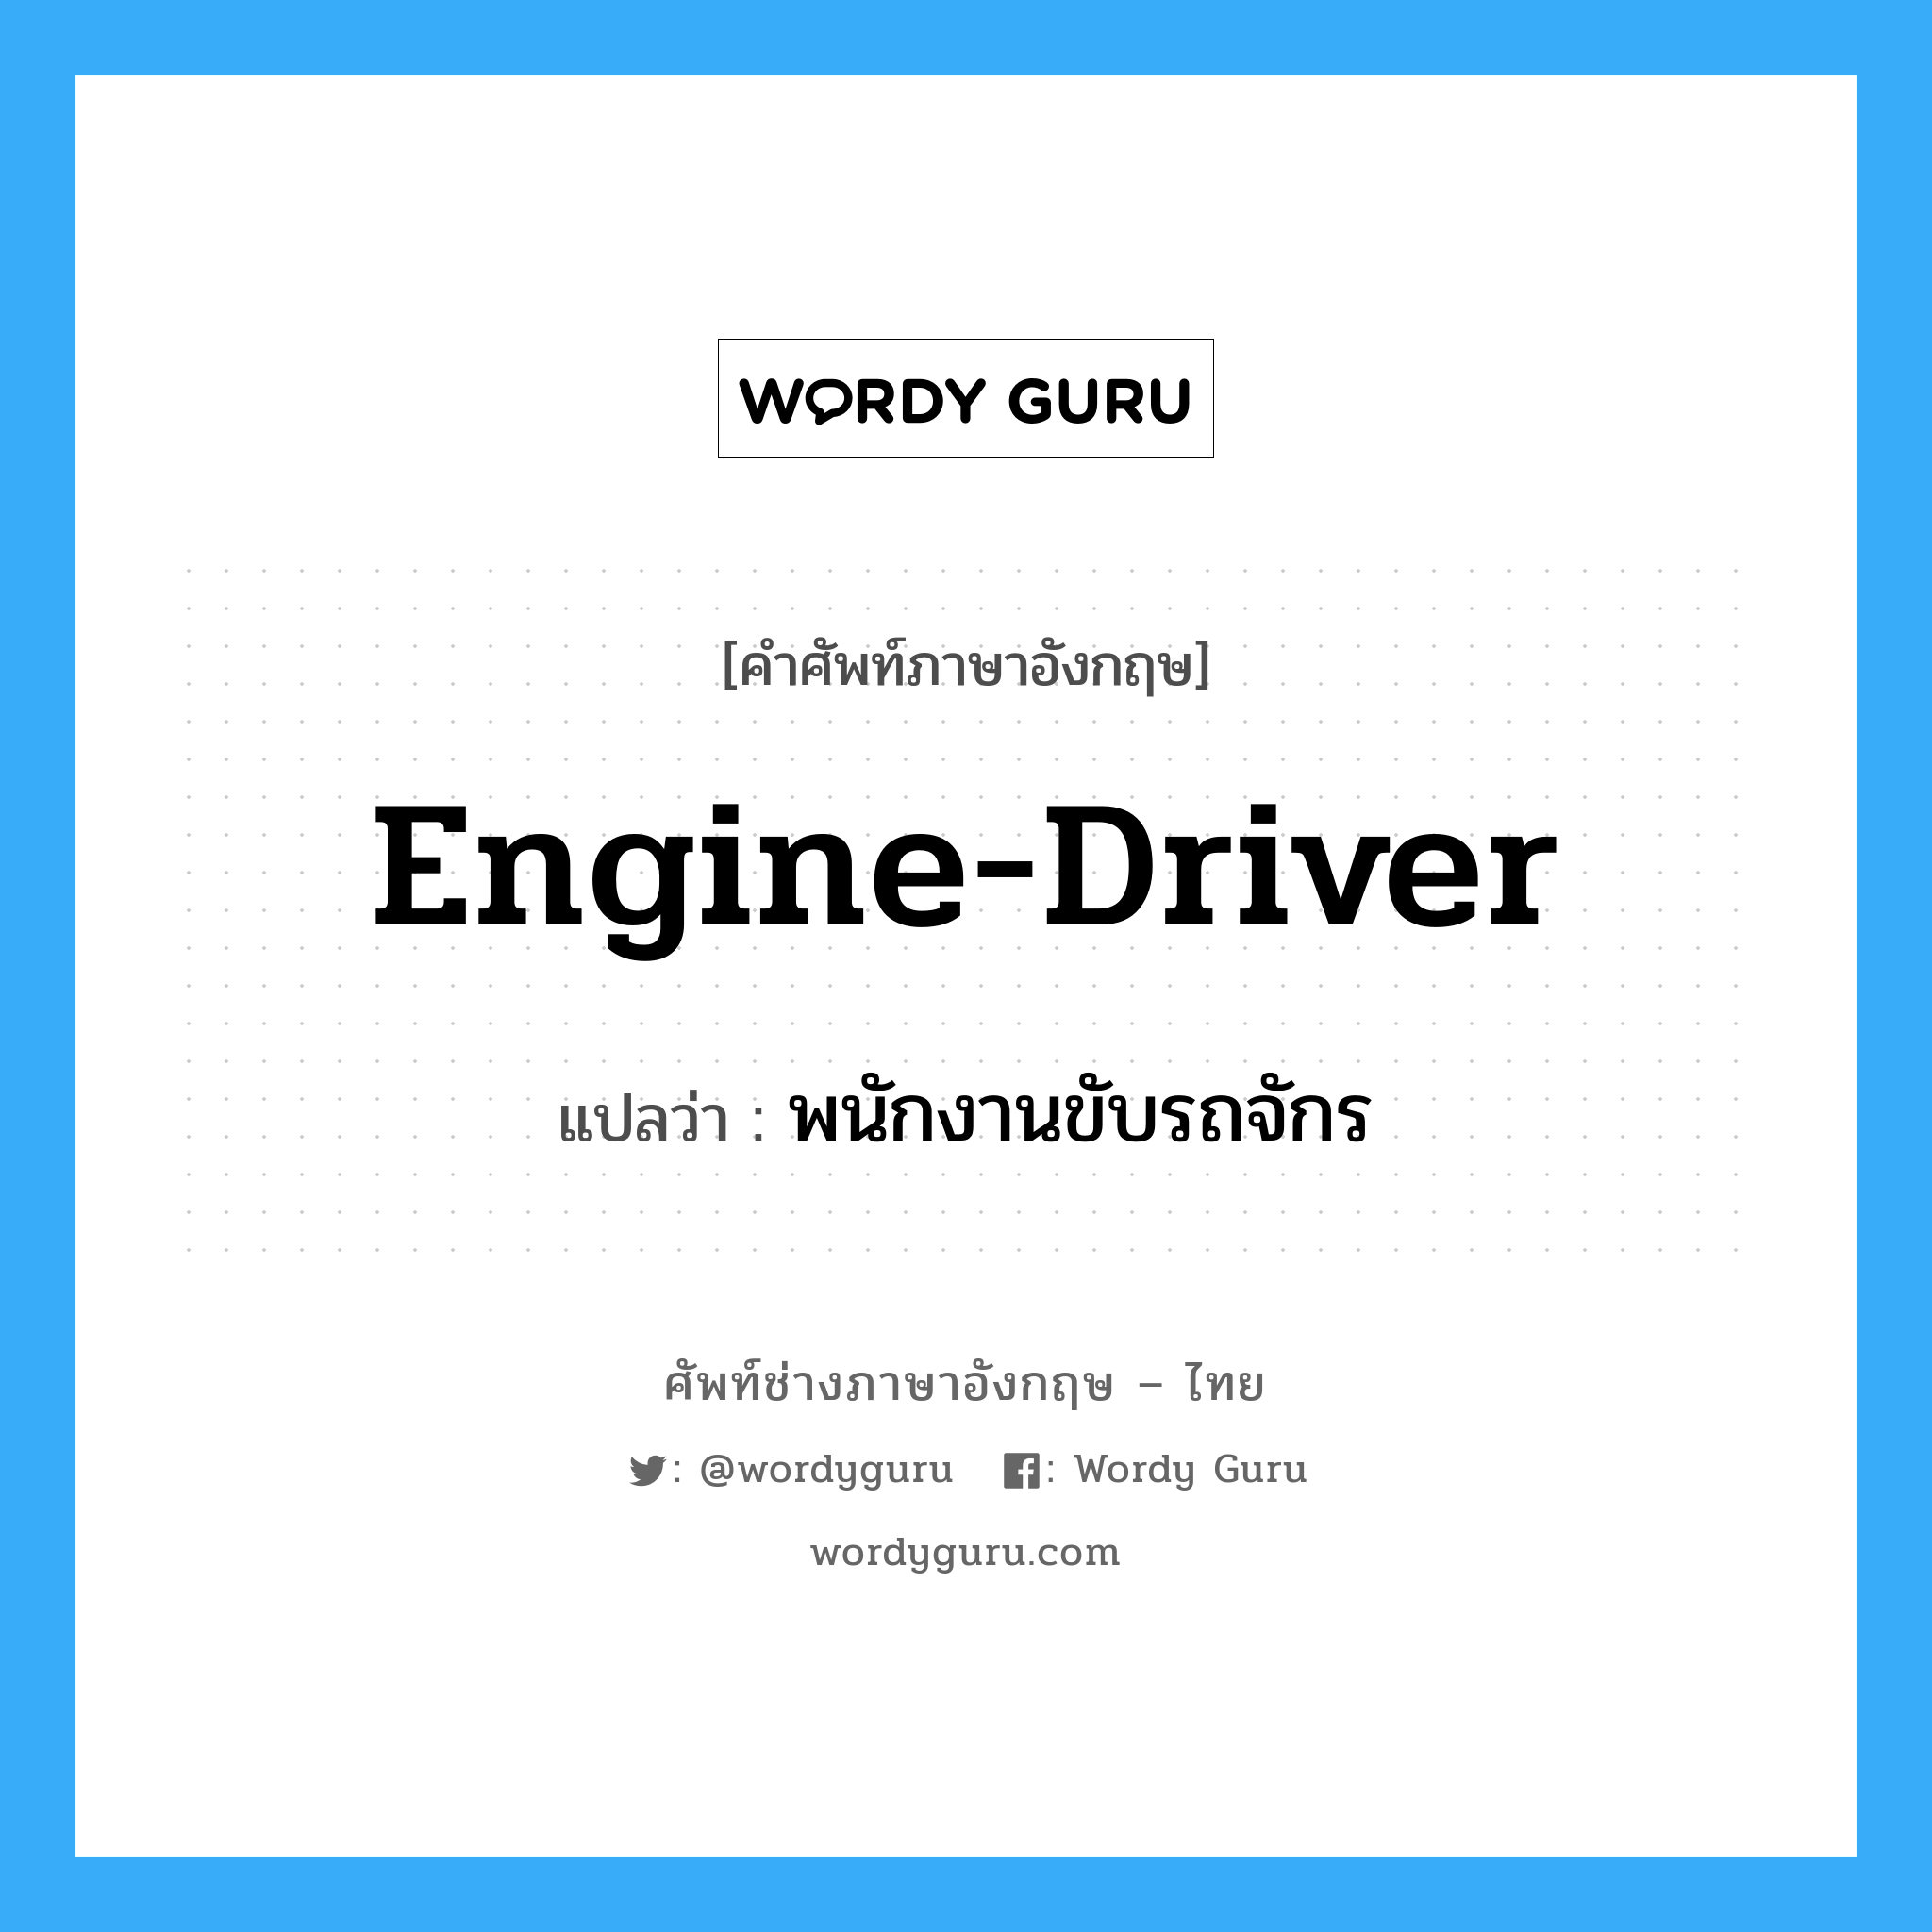 พนักงานขับรถจักร ภาษาอังกฤษ?, คำศัพท์ช่างภาษาอังกฤษ - ไทย พนักงานขับรถจักร คำศัพท์ภาษาอังกฤษ พนักงานขับรถจักร แปลว่า engine-driver